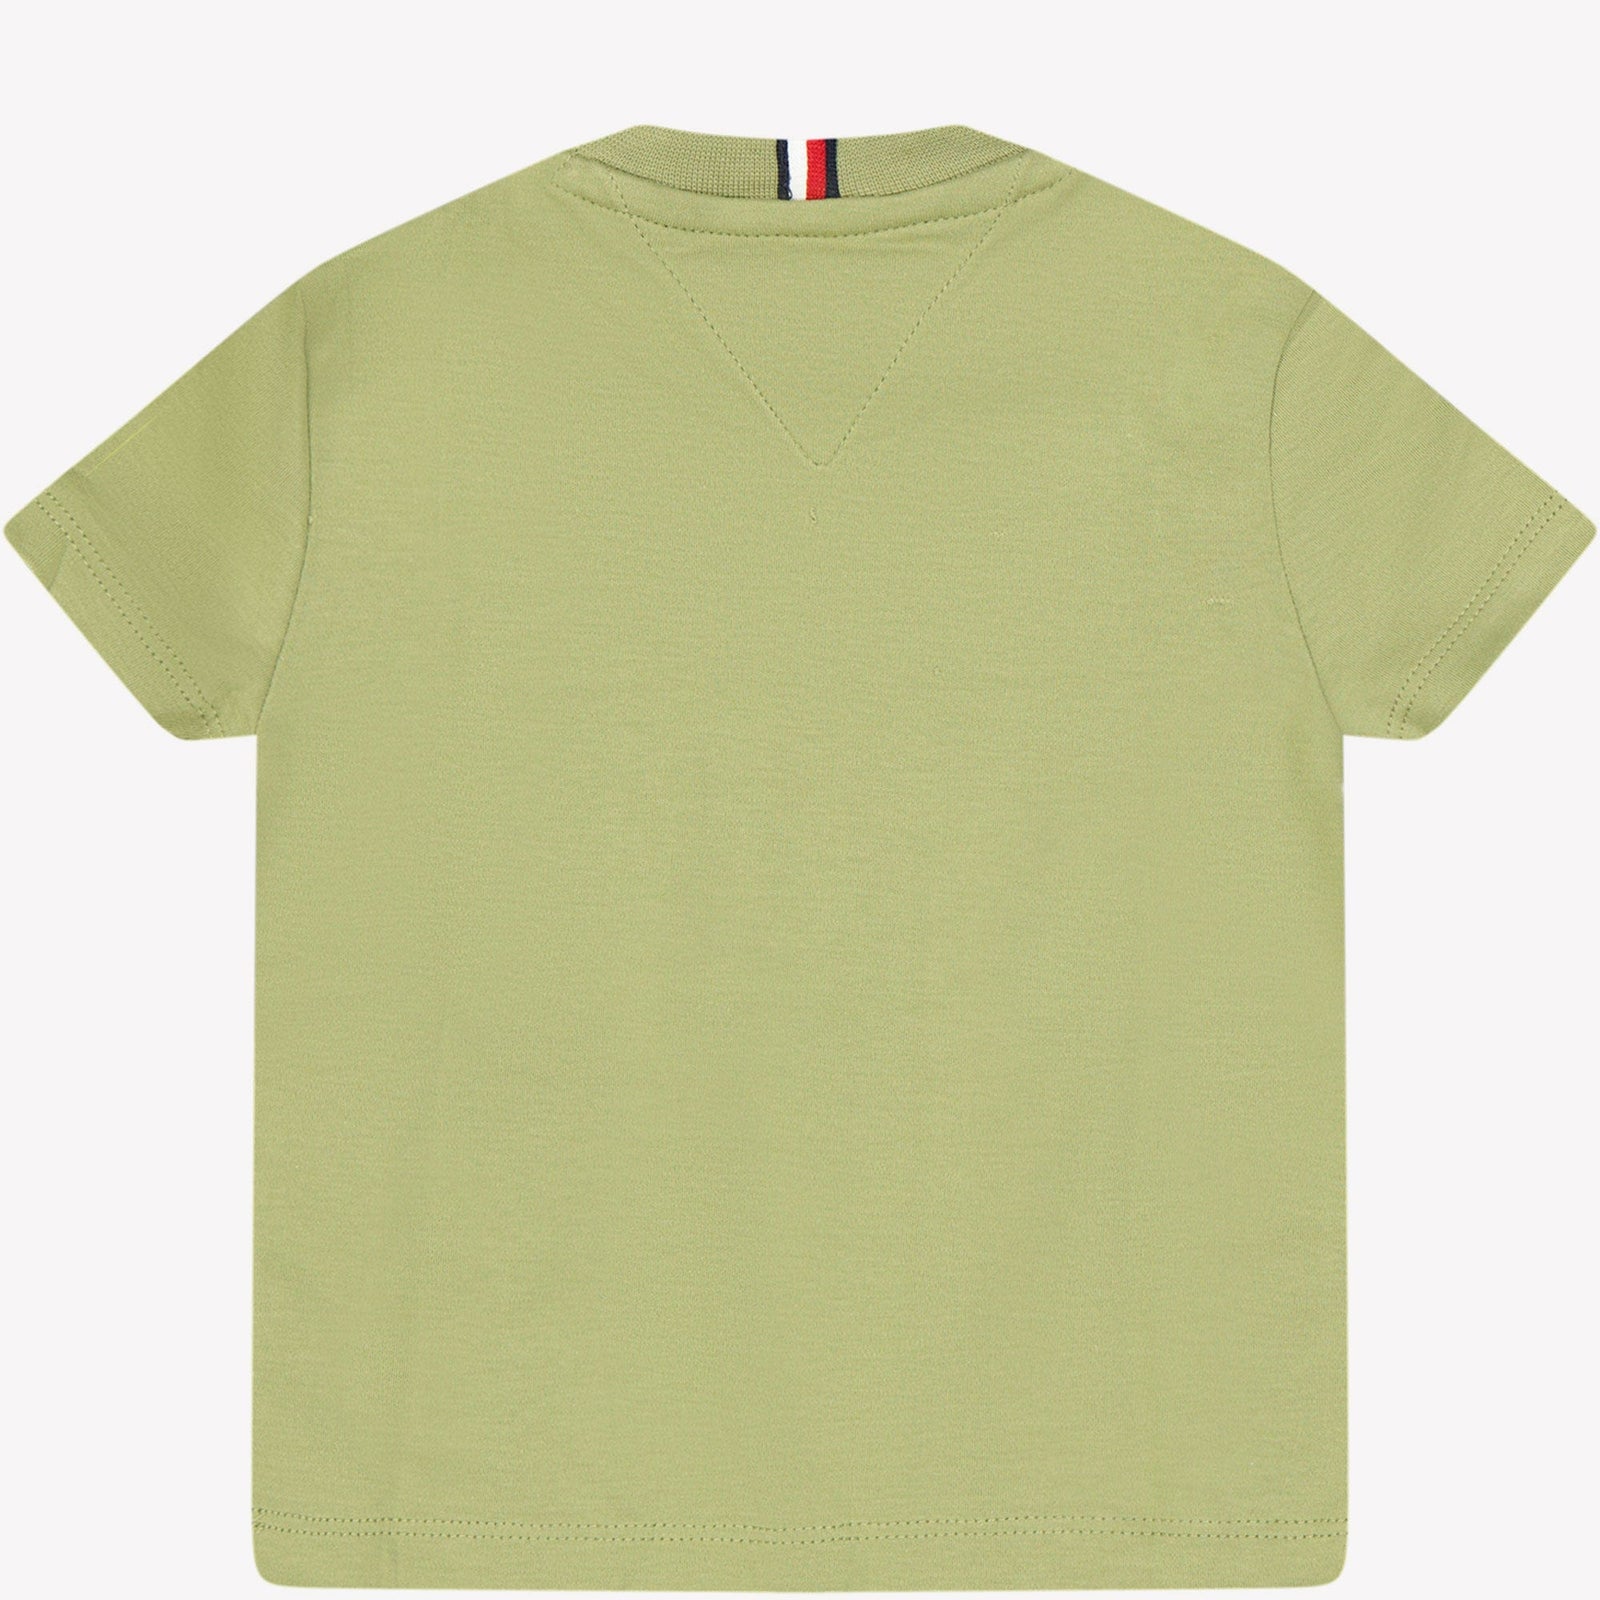 Tommy Hilfiger Baby Jongens T-shirt Olijf Groen 74